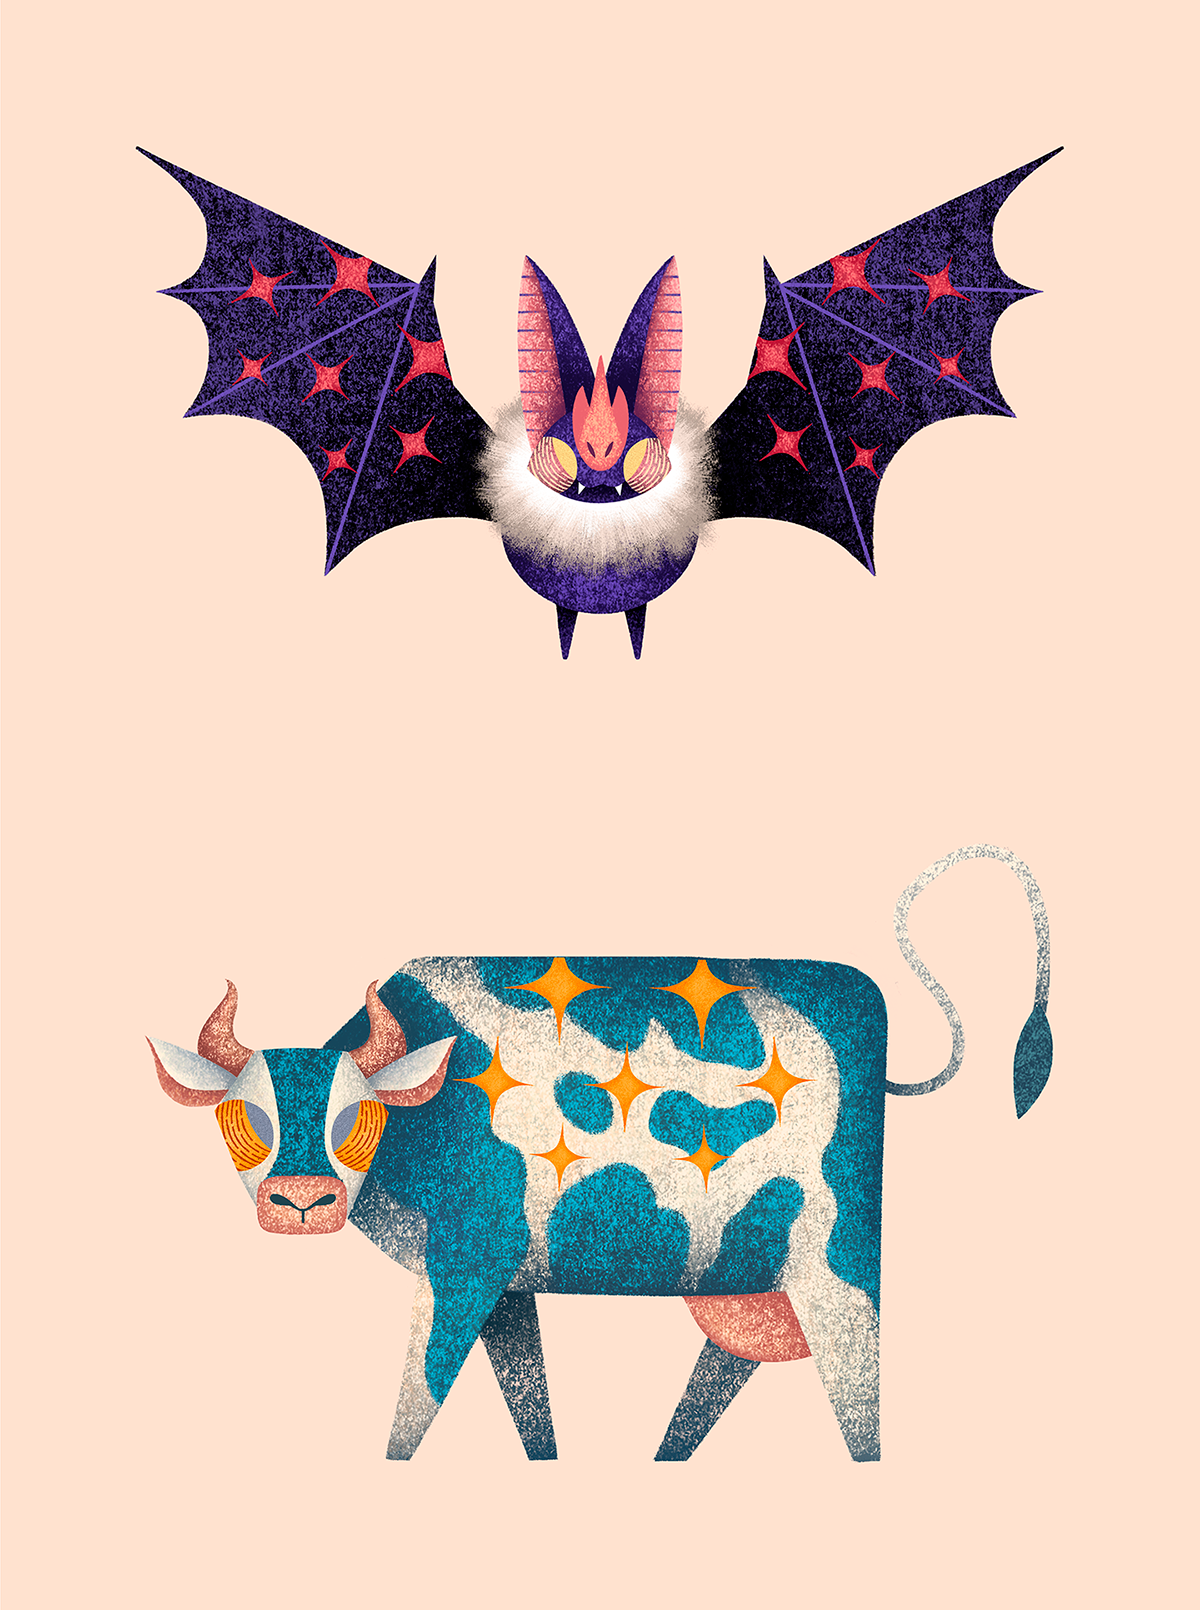 El Salvador ILLUSTRATION  Character design  animals art draw bat cow Nature monkey